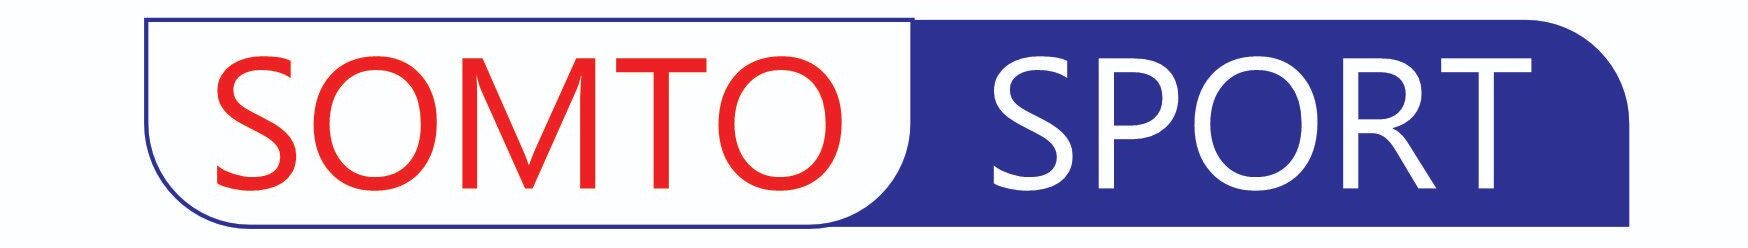 somtosport logo